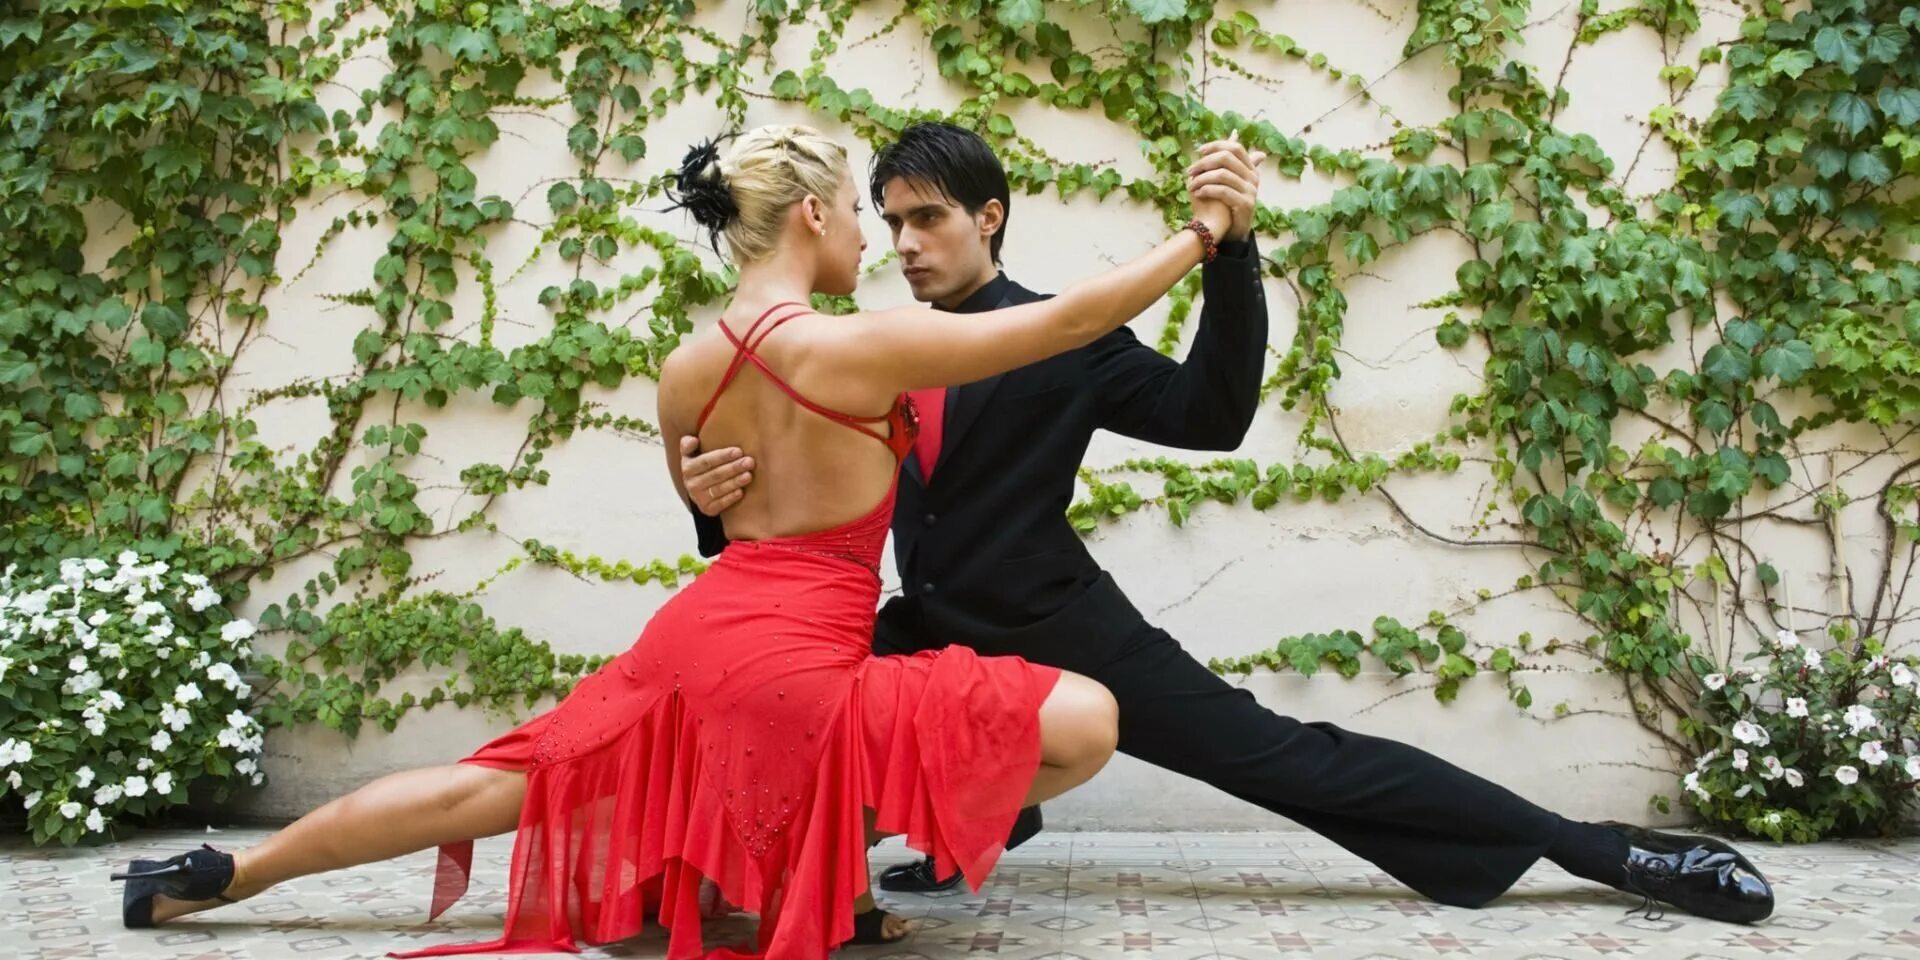 Аргентинское танго. Танец пары. Романтический танец. Танго танец.